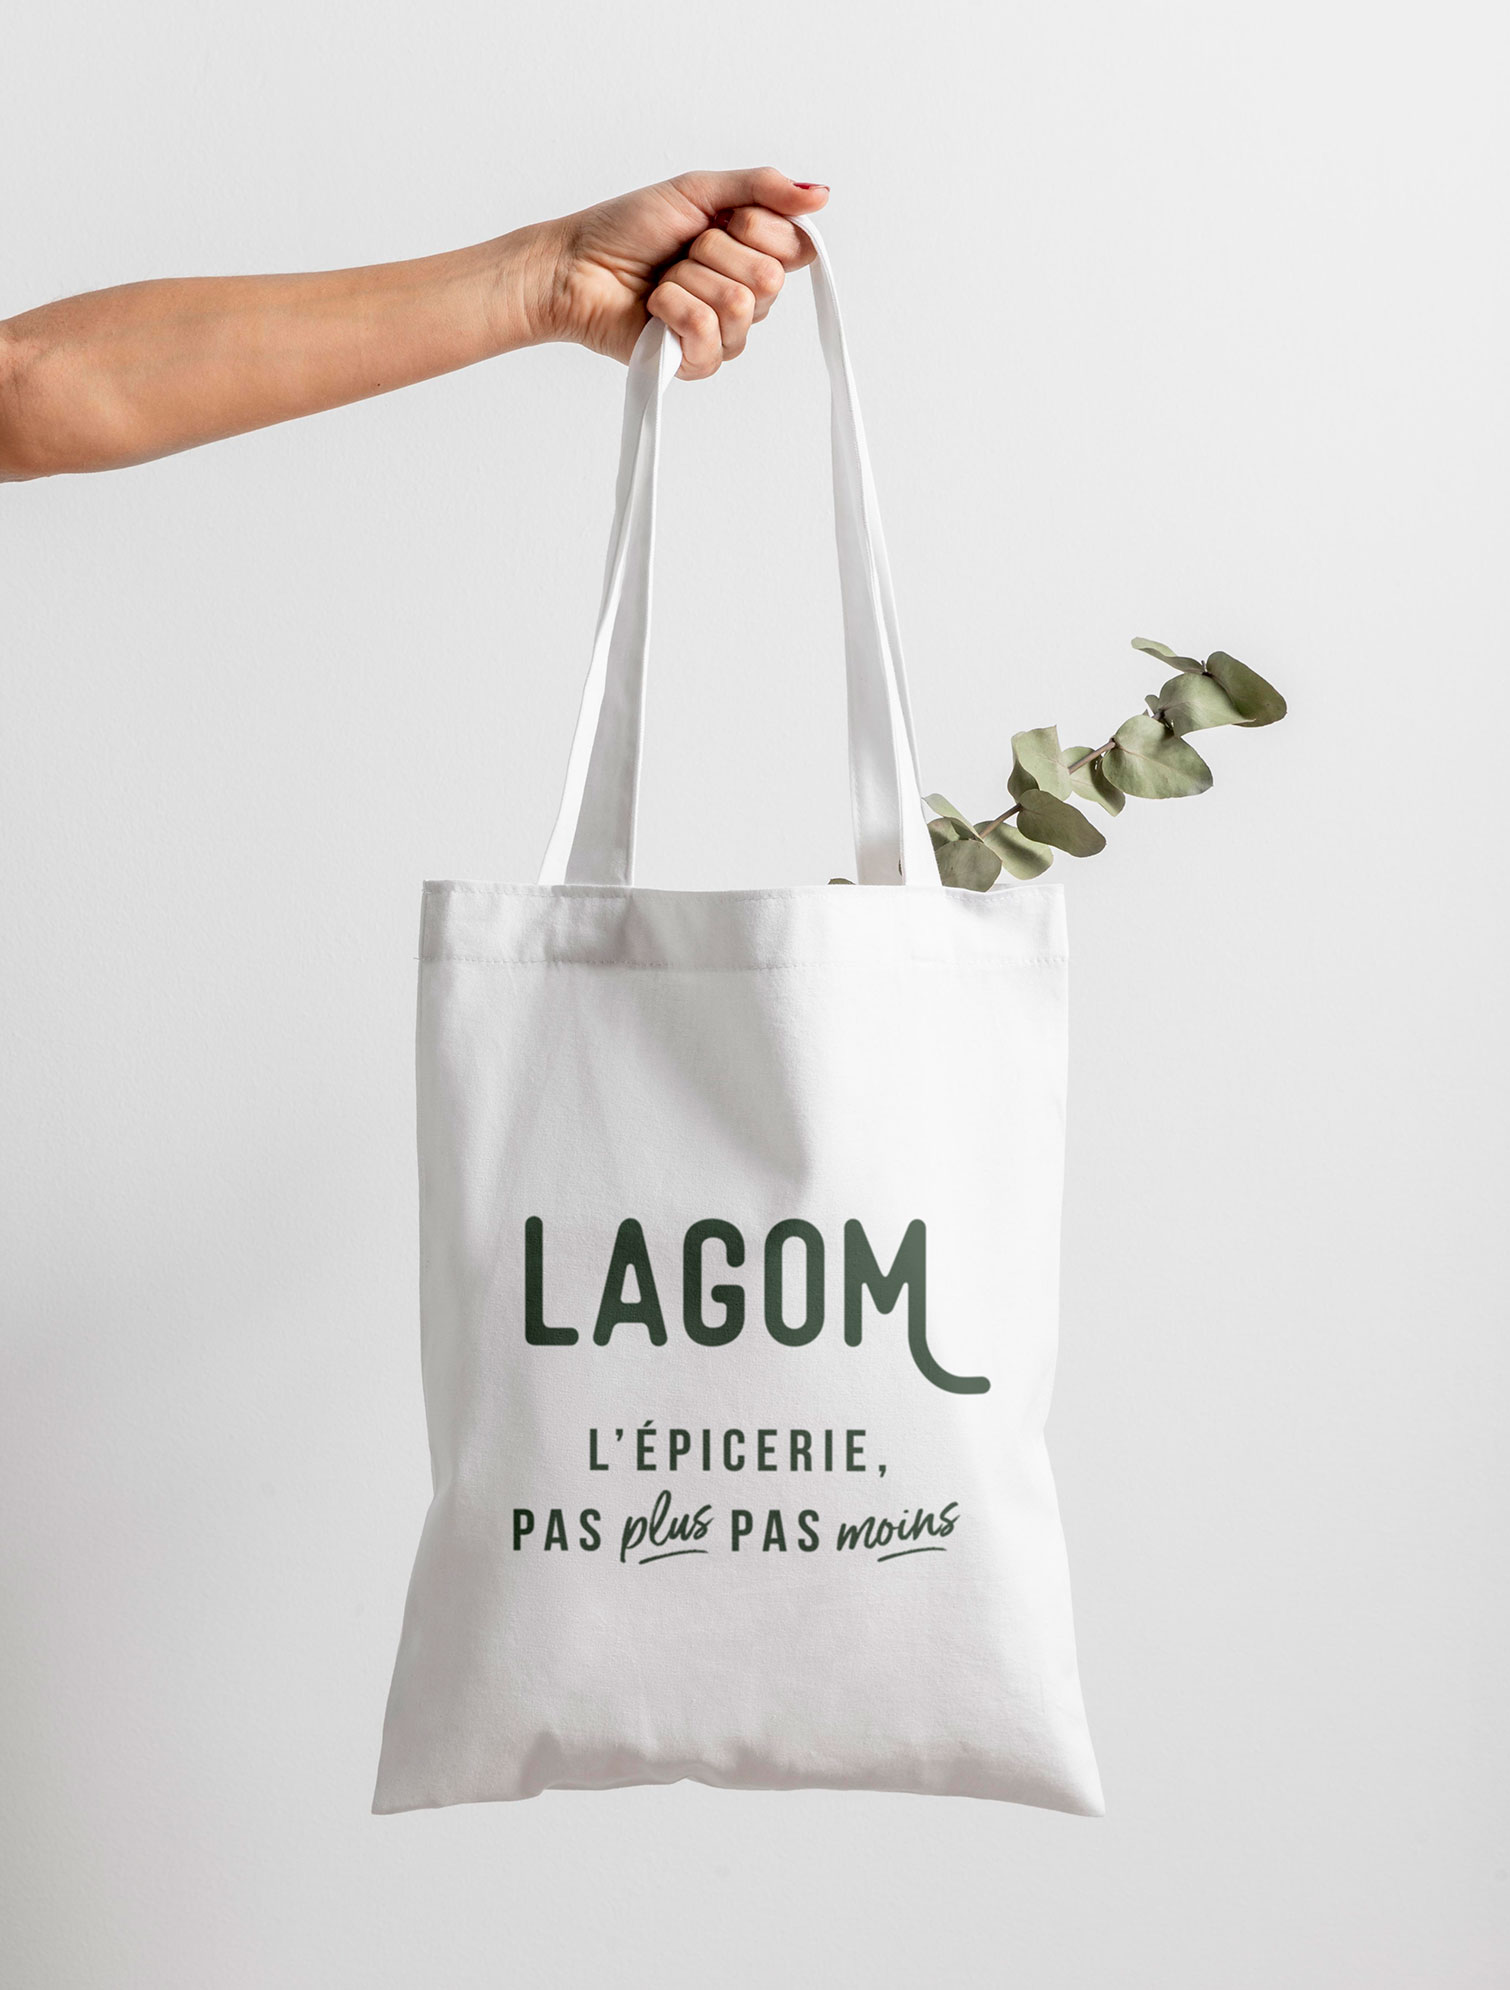 Création du tote bag de l'épicerie Lagom par le Studio graphique Laëtitia Costes